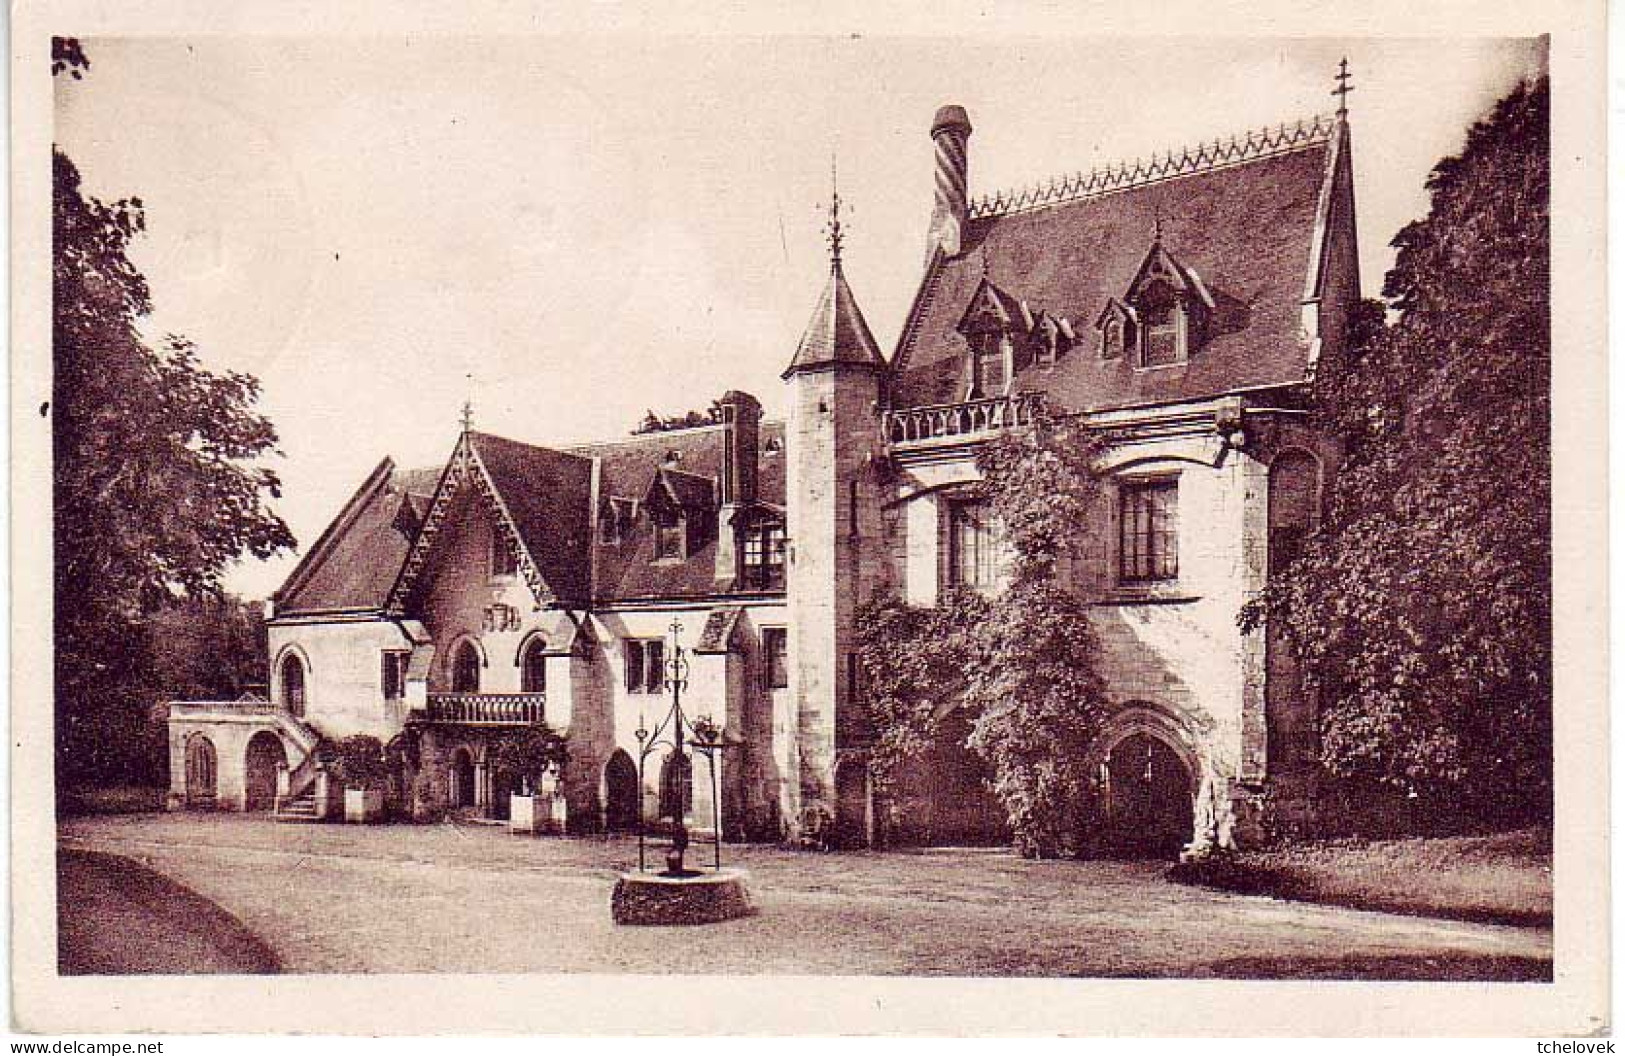 (76). SM. Jumièges. 4 Cp N° 14 & 38 Abbaye De Jumièges & 117 Ancienne Hostellerie Des Moines 1953 & (3) 1950 - Jumieges